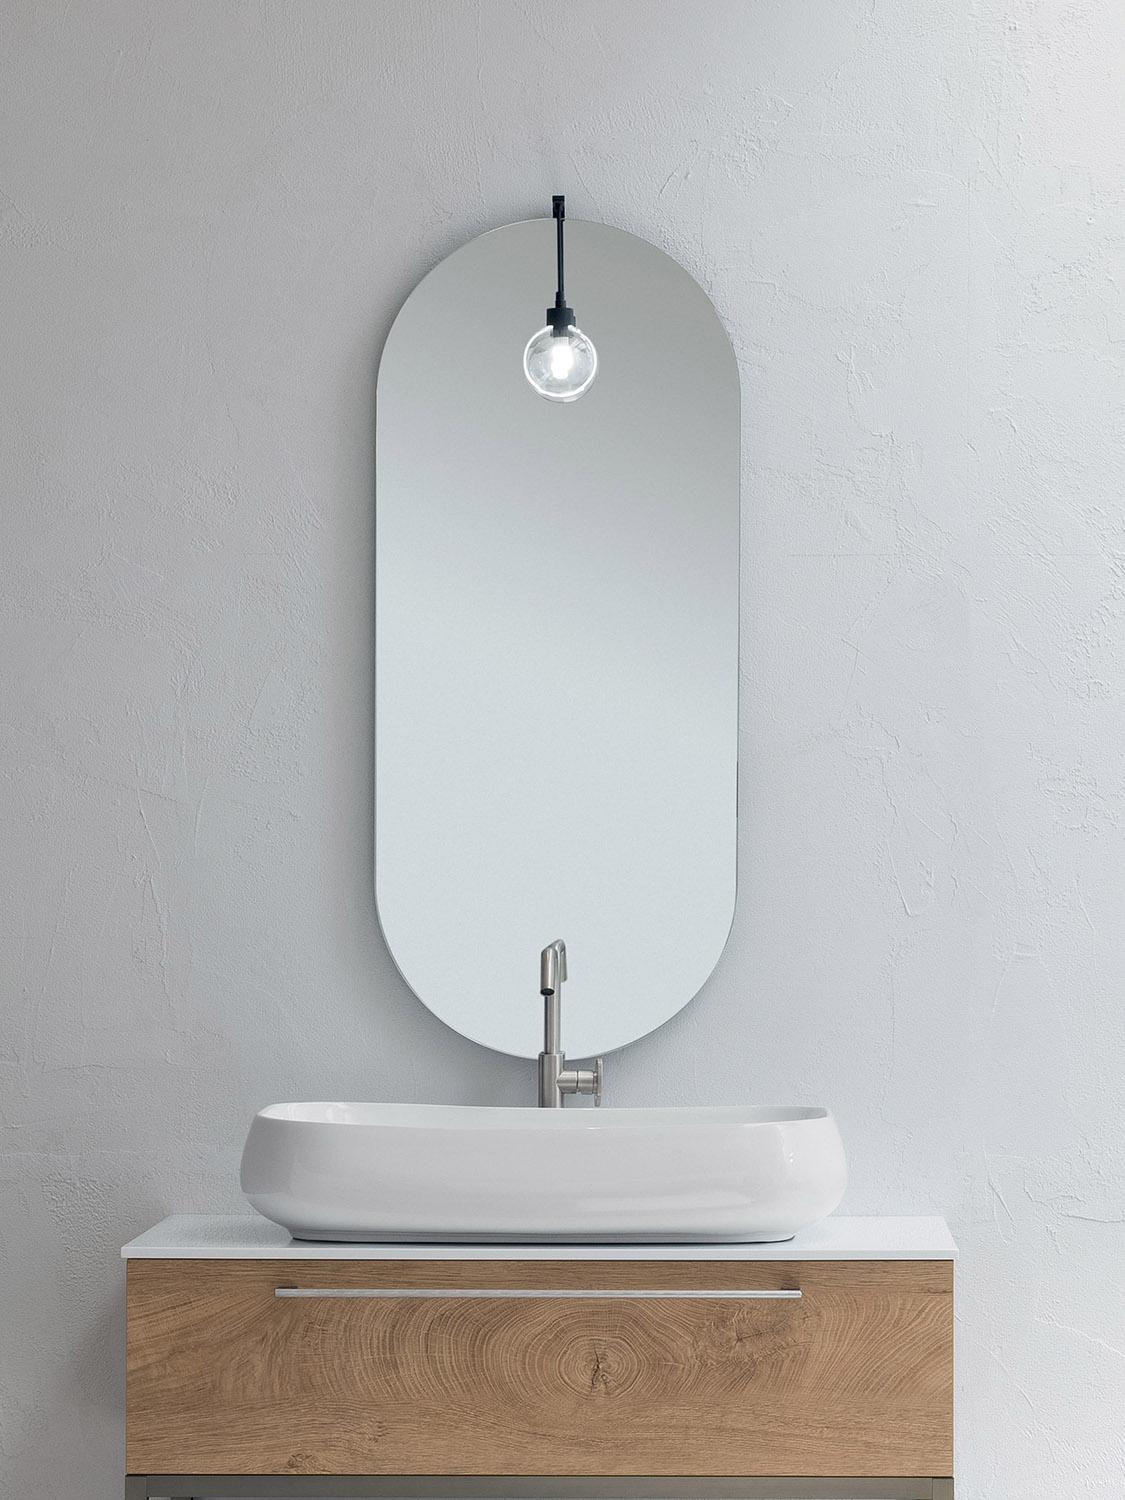 Specchio da bagno ovale - Tutti i produttori del design e dell